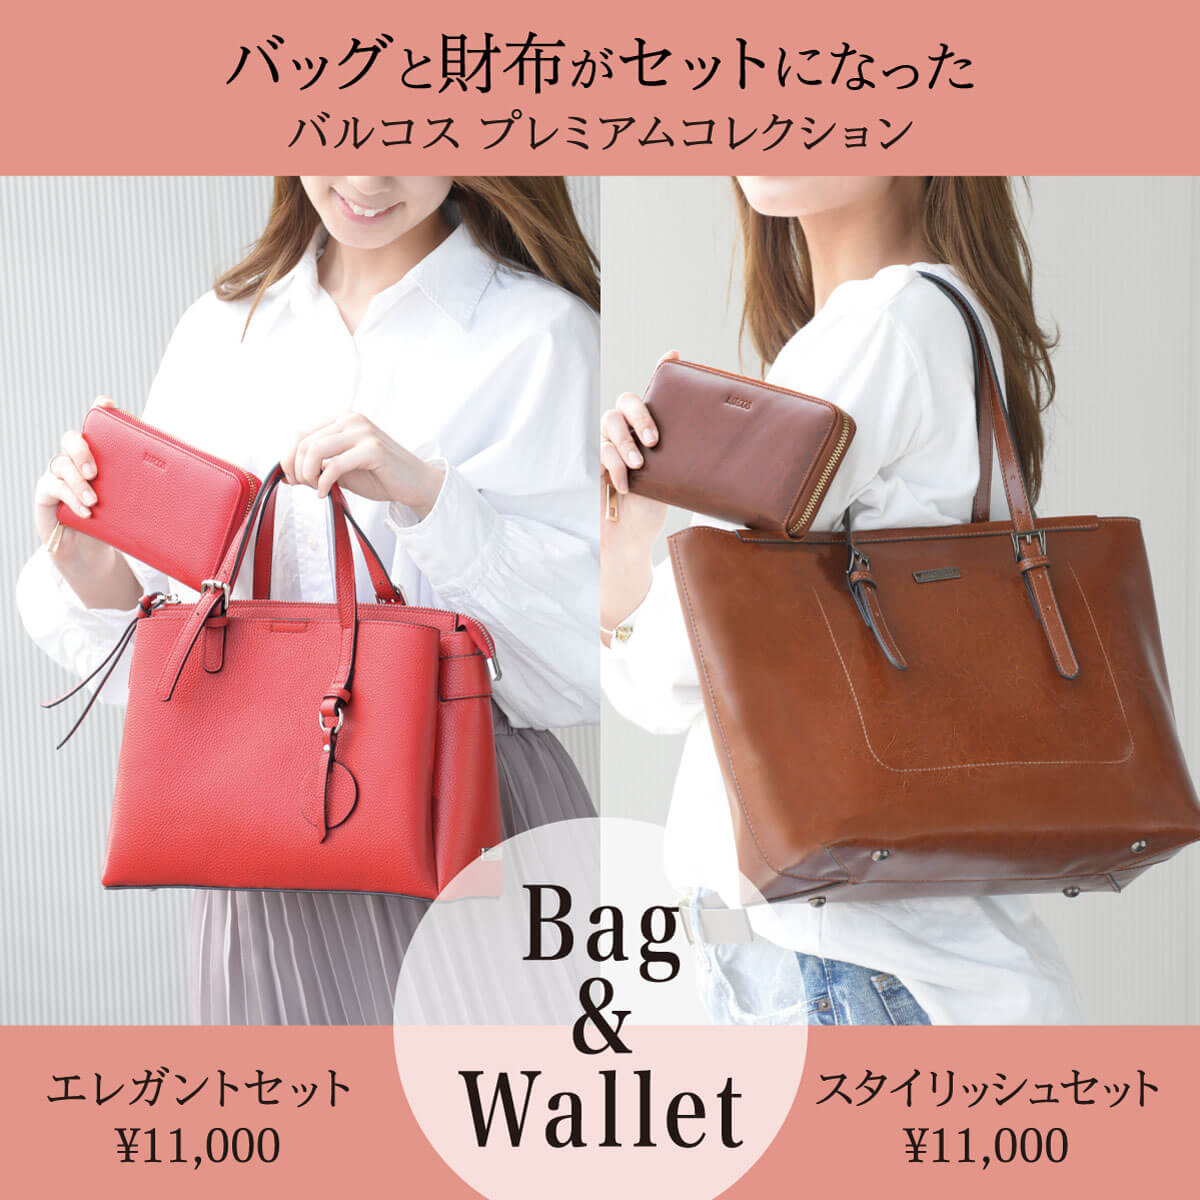 バッグと長財布がセットで1万円